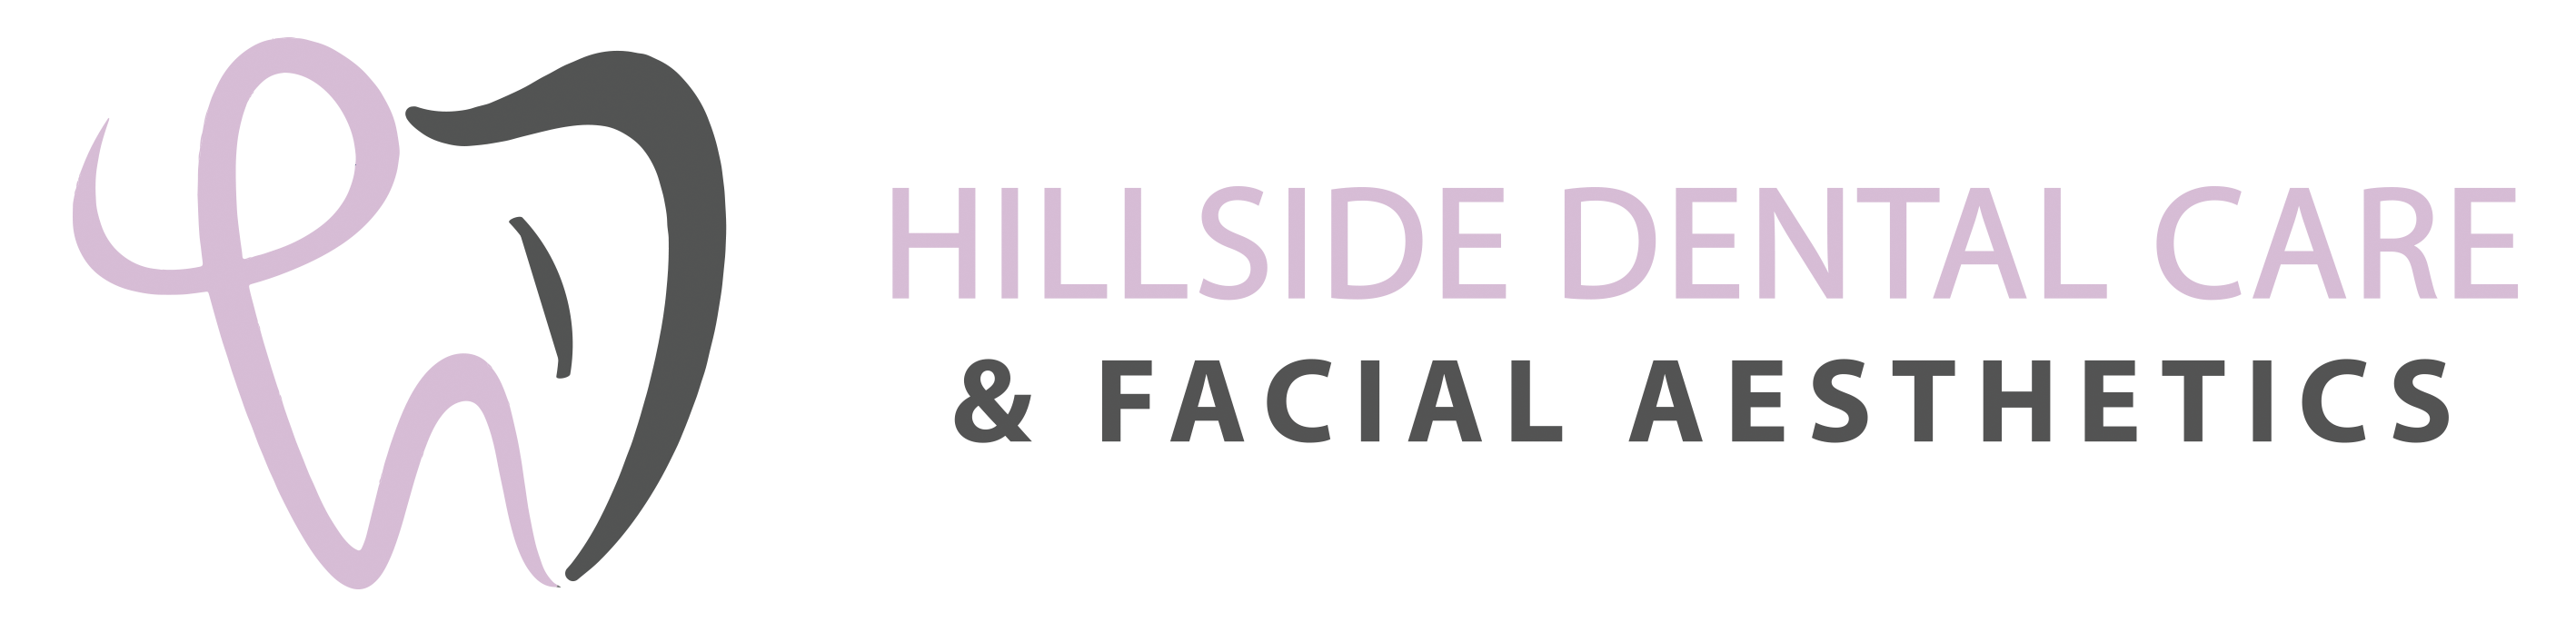 Hillside Dental Care